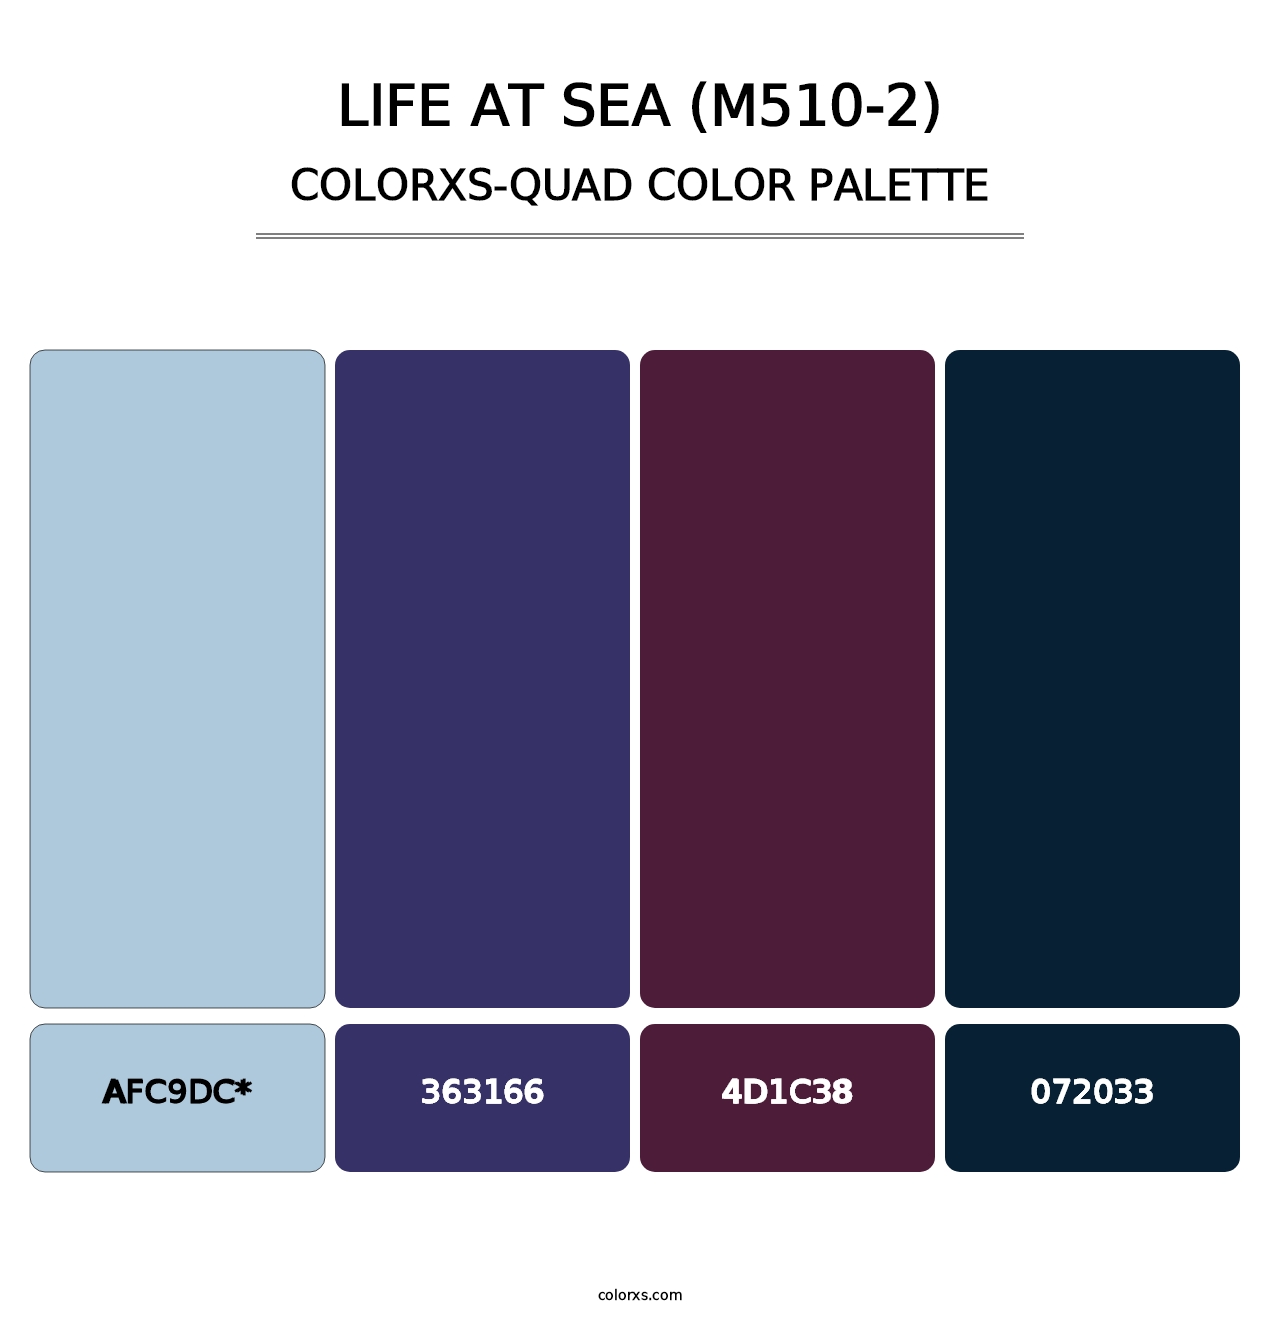 Life At Sea (M510-2) - Colorxs Quad Palette